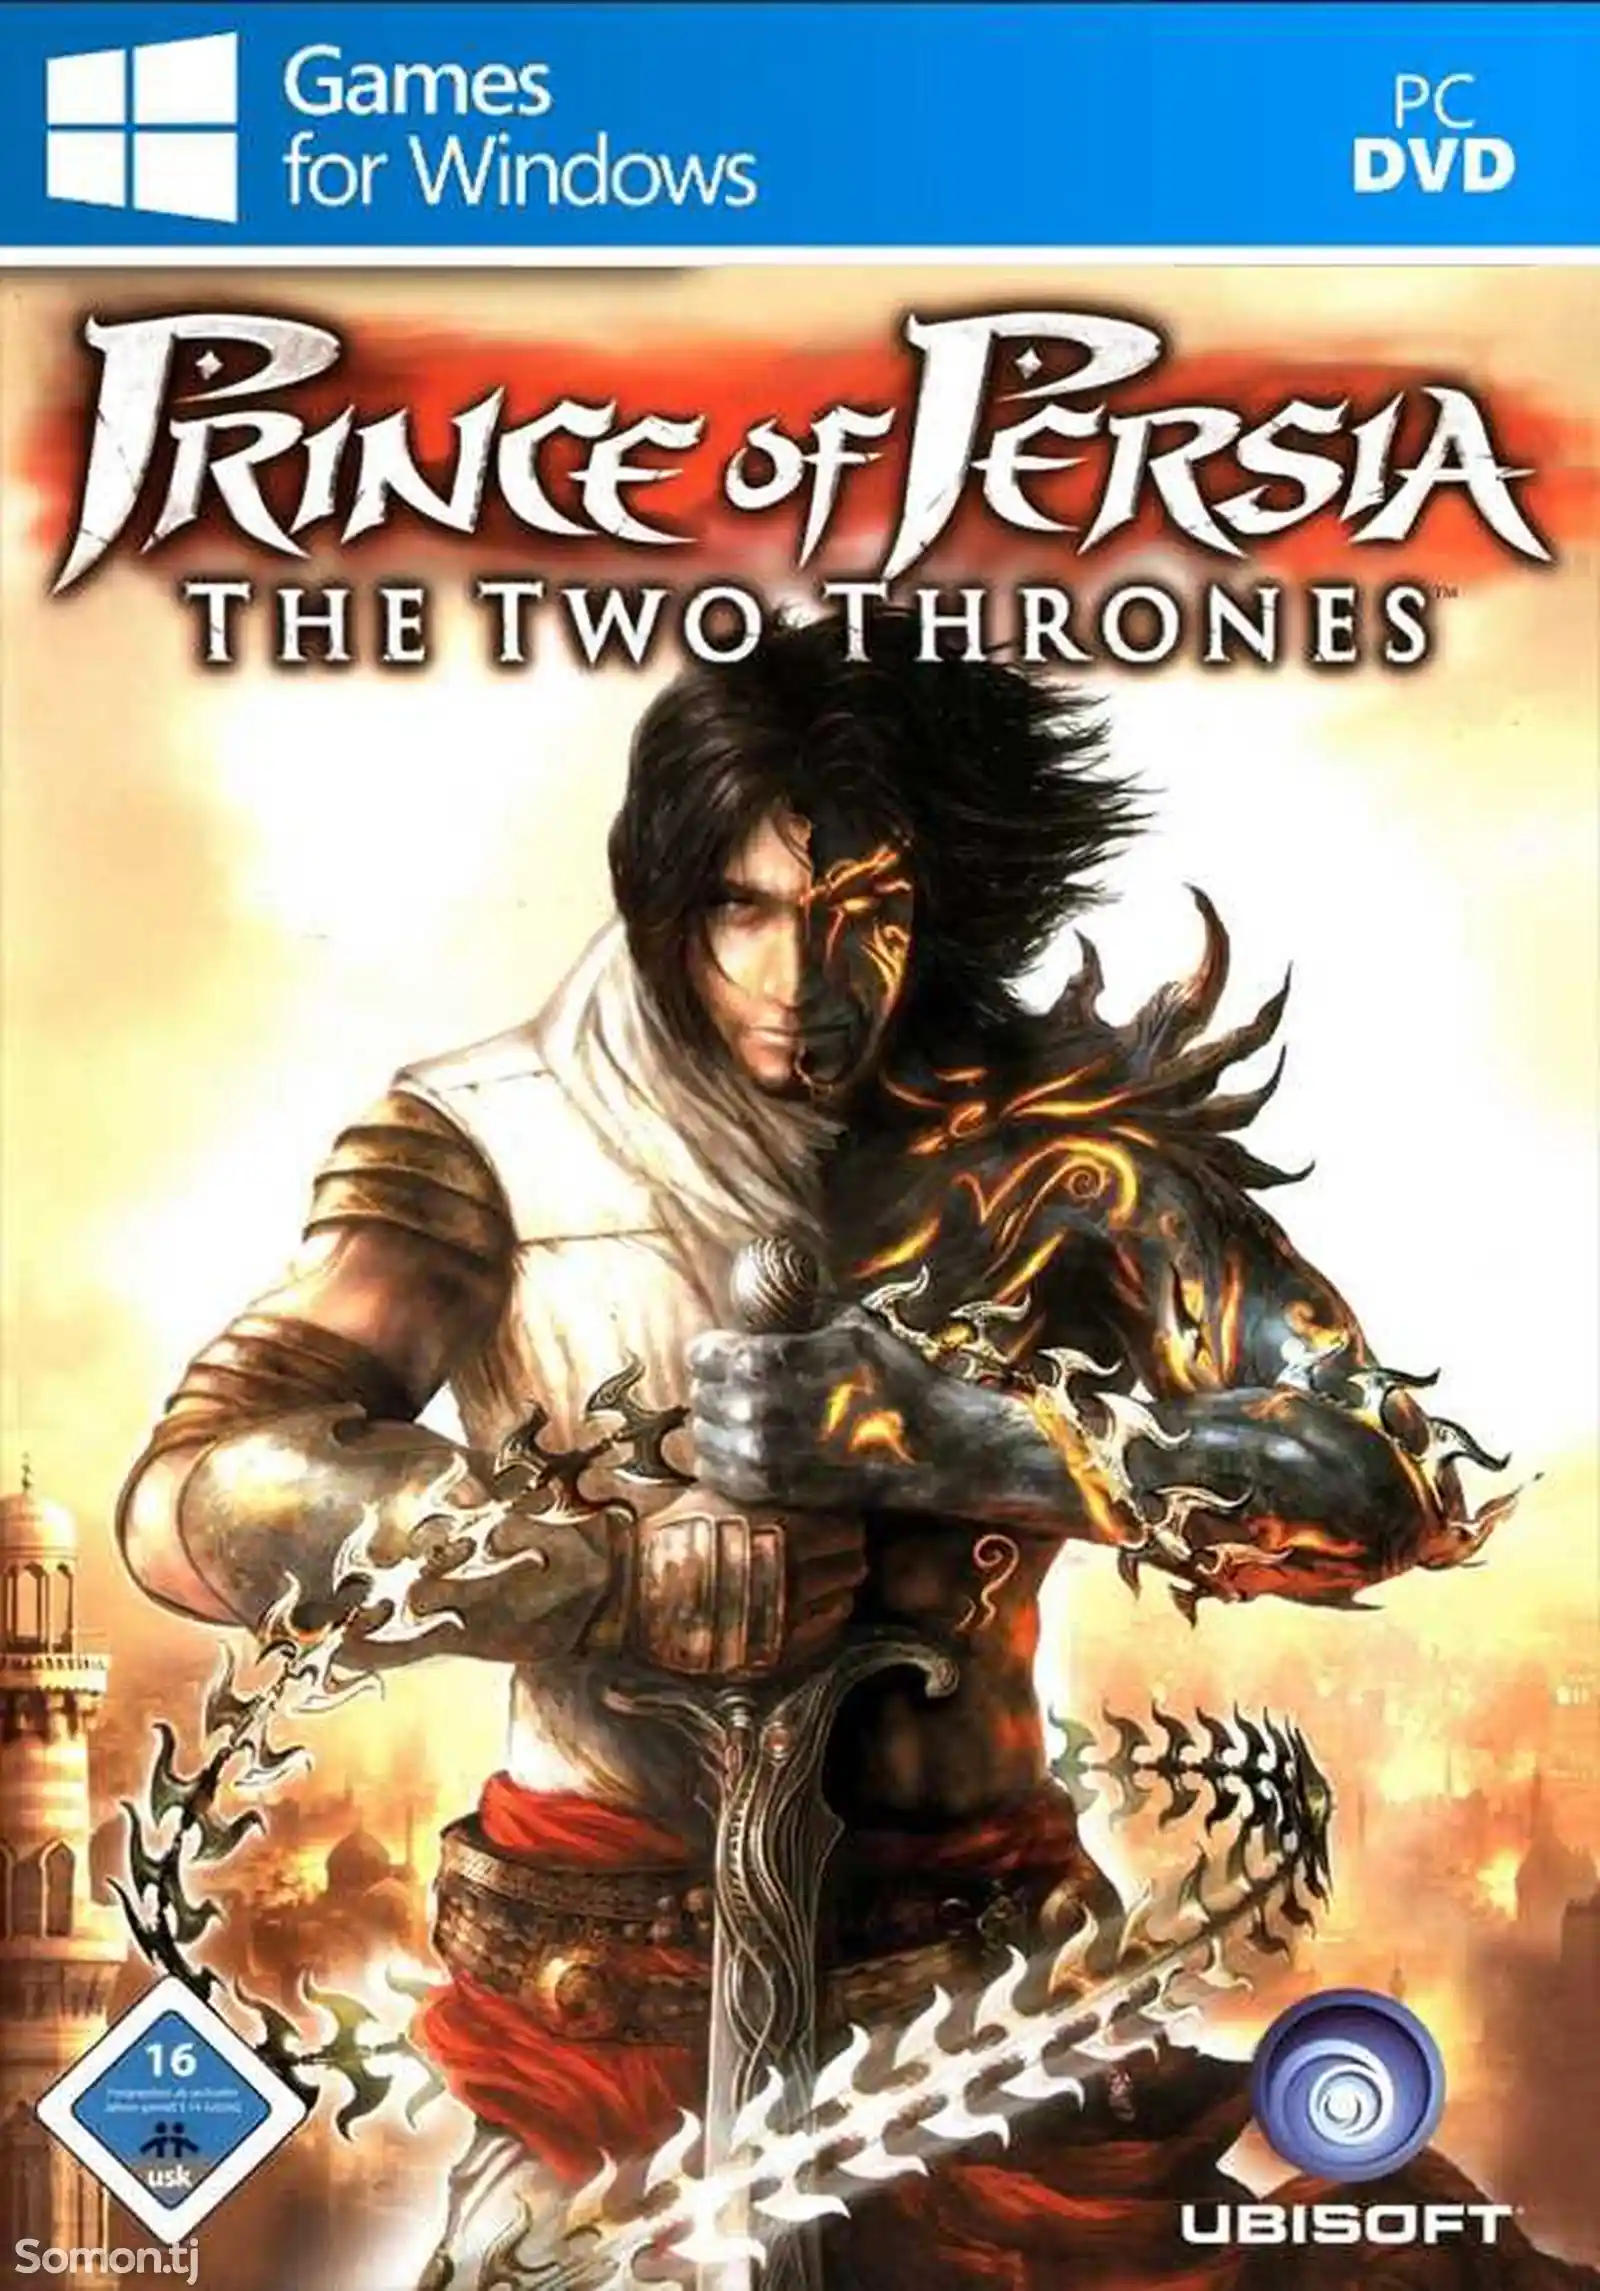 Игра Prince of persia The two thrones для компьютера-пк-pc-1